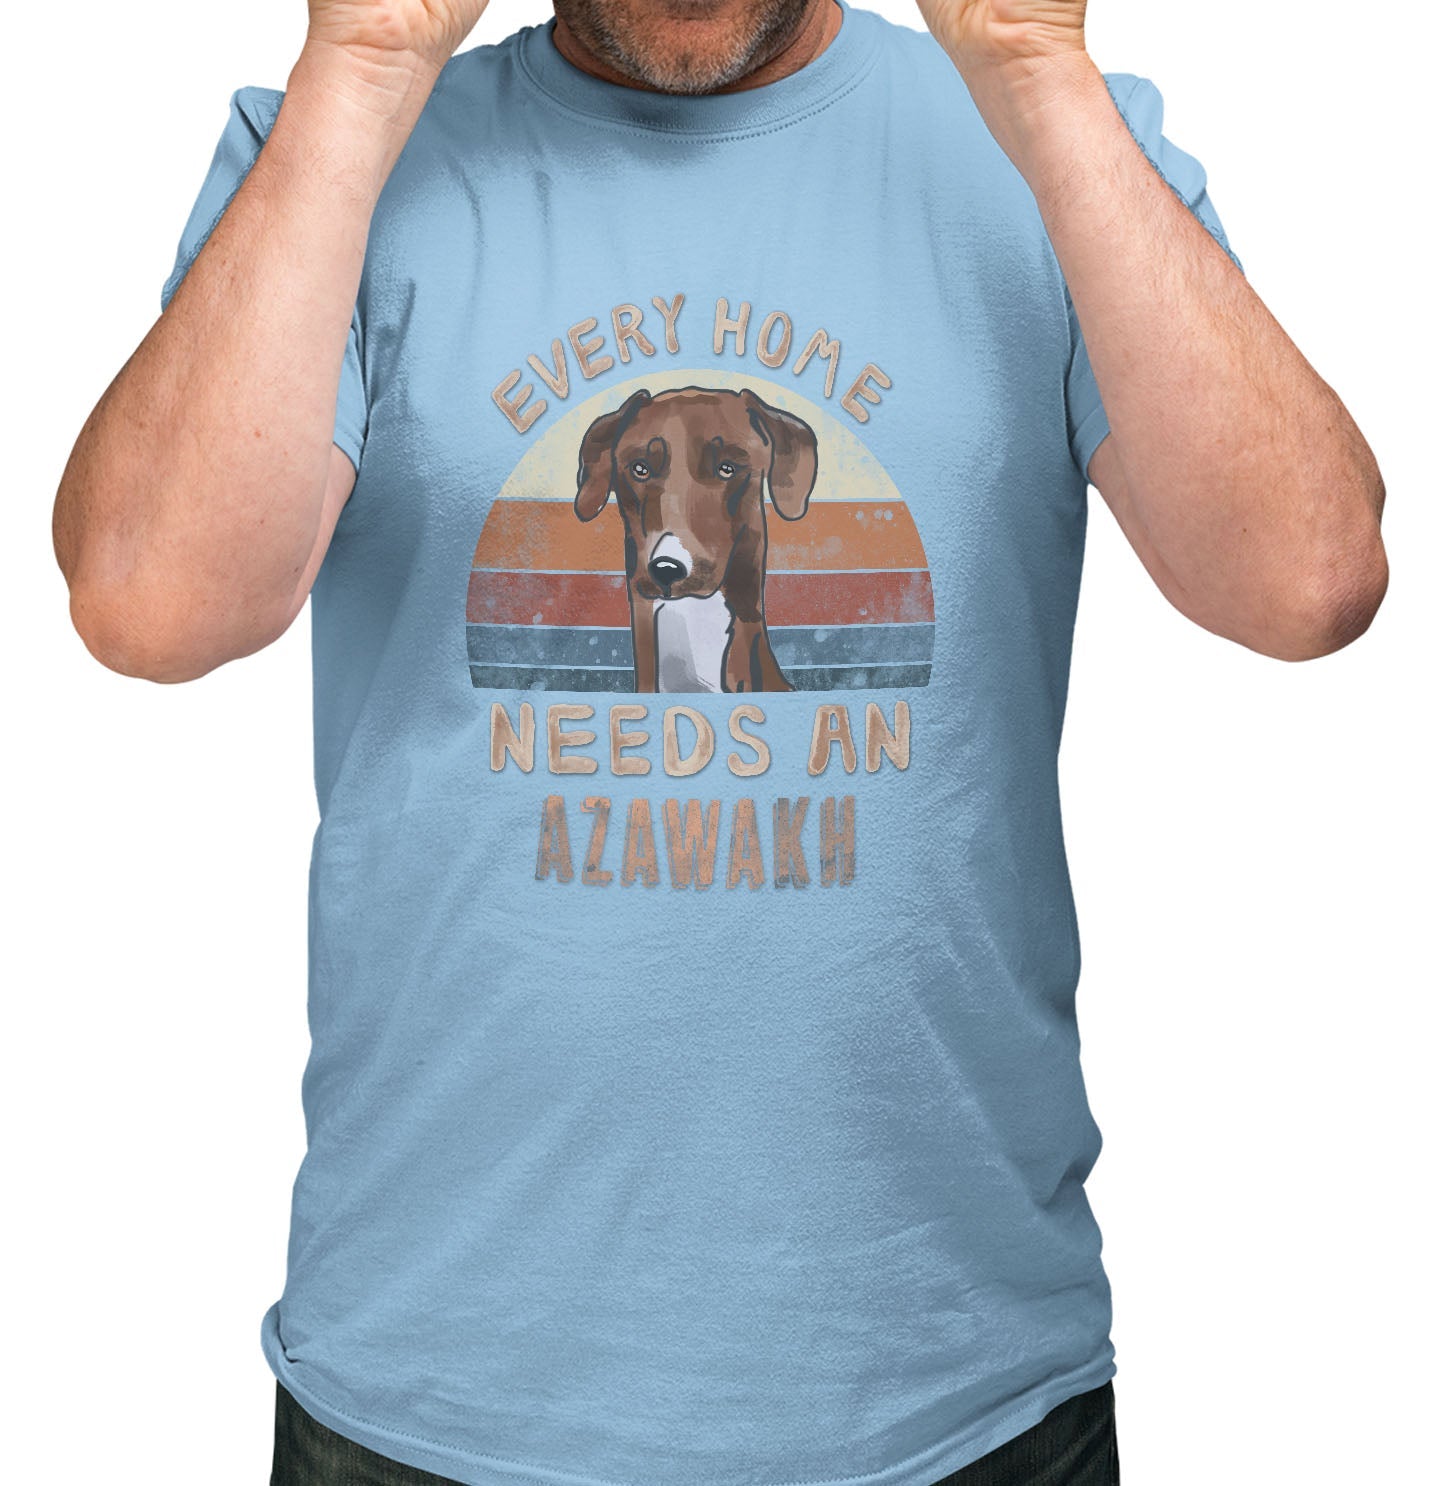 Every Home Needs a Azawakh - Adult Unisex T-Shirt